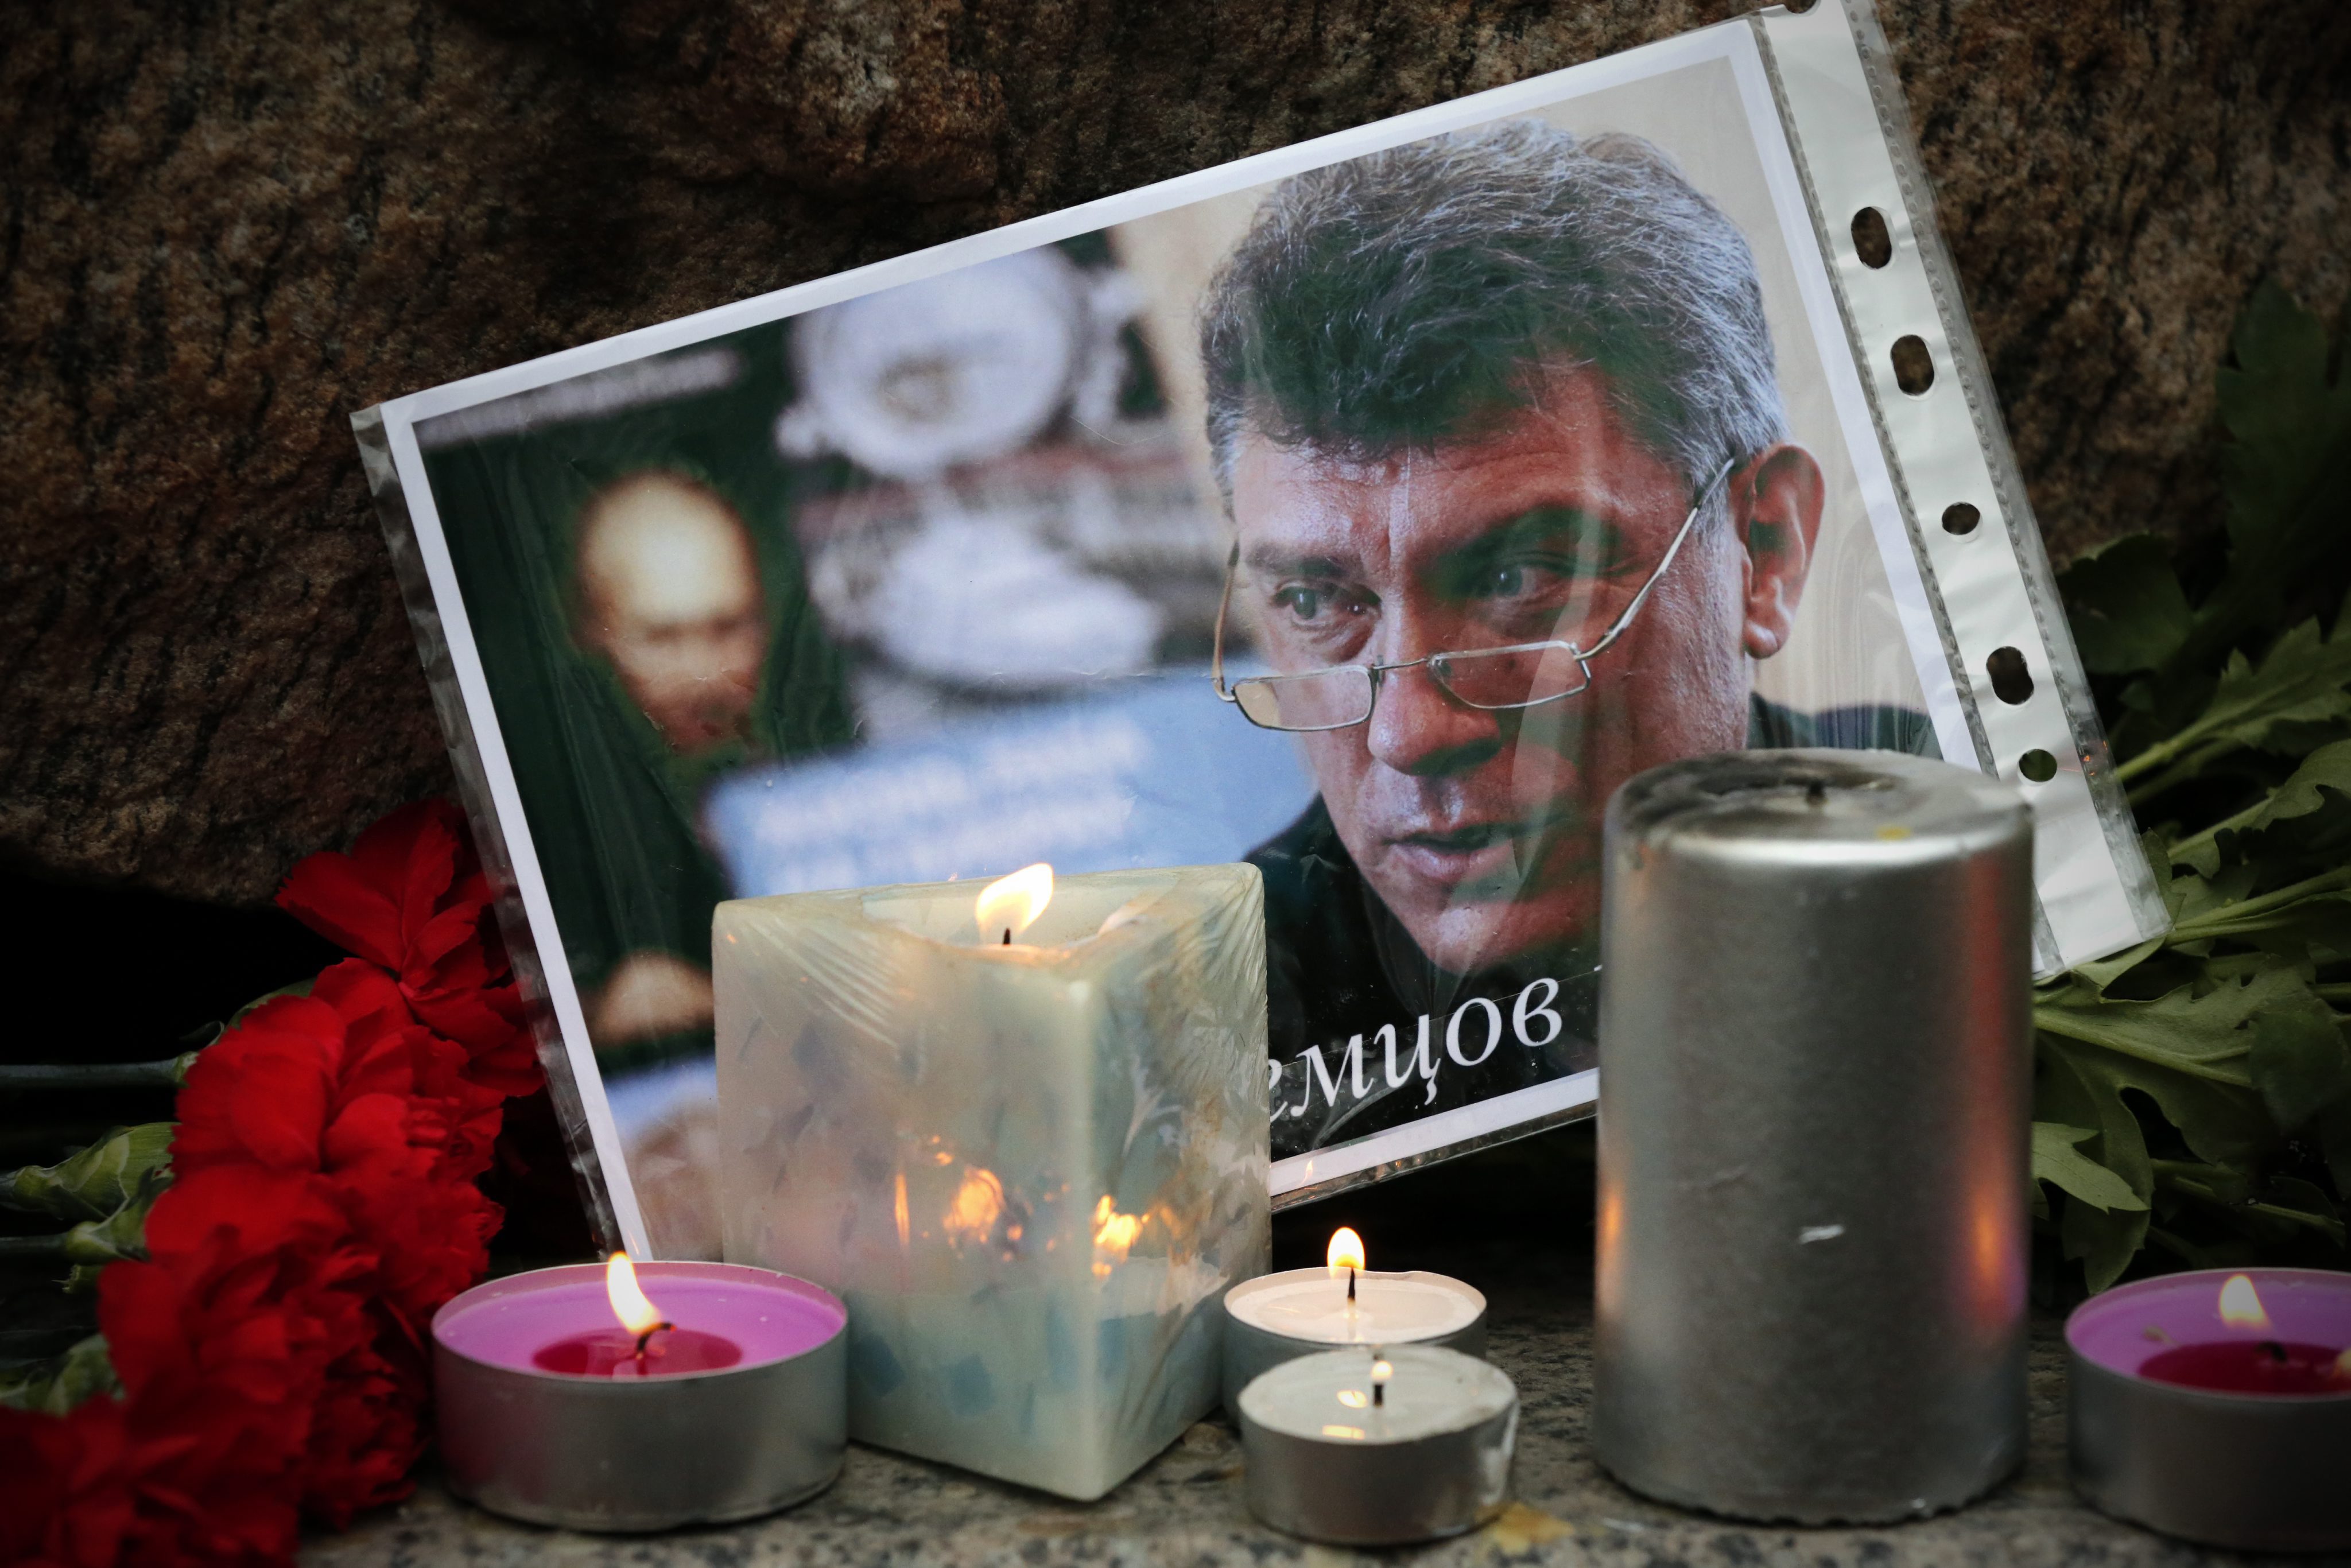 "Той умря за бъдещето на Русия" и "Той се бореше за свободна Русия" се чете на плакатите, издигнати от участниците в проявата